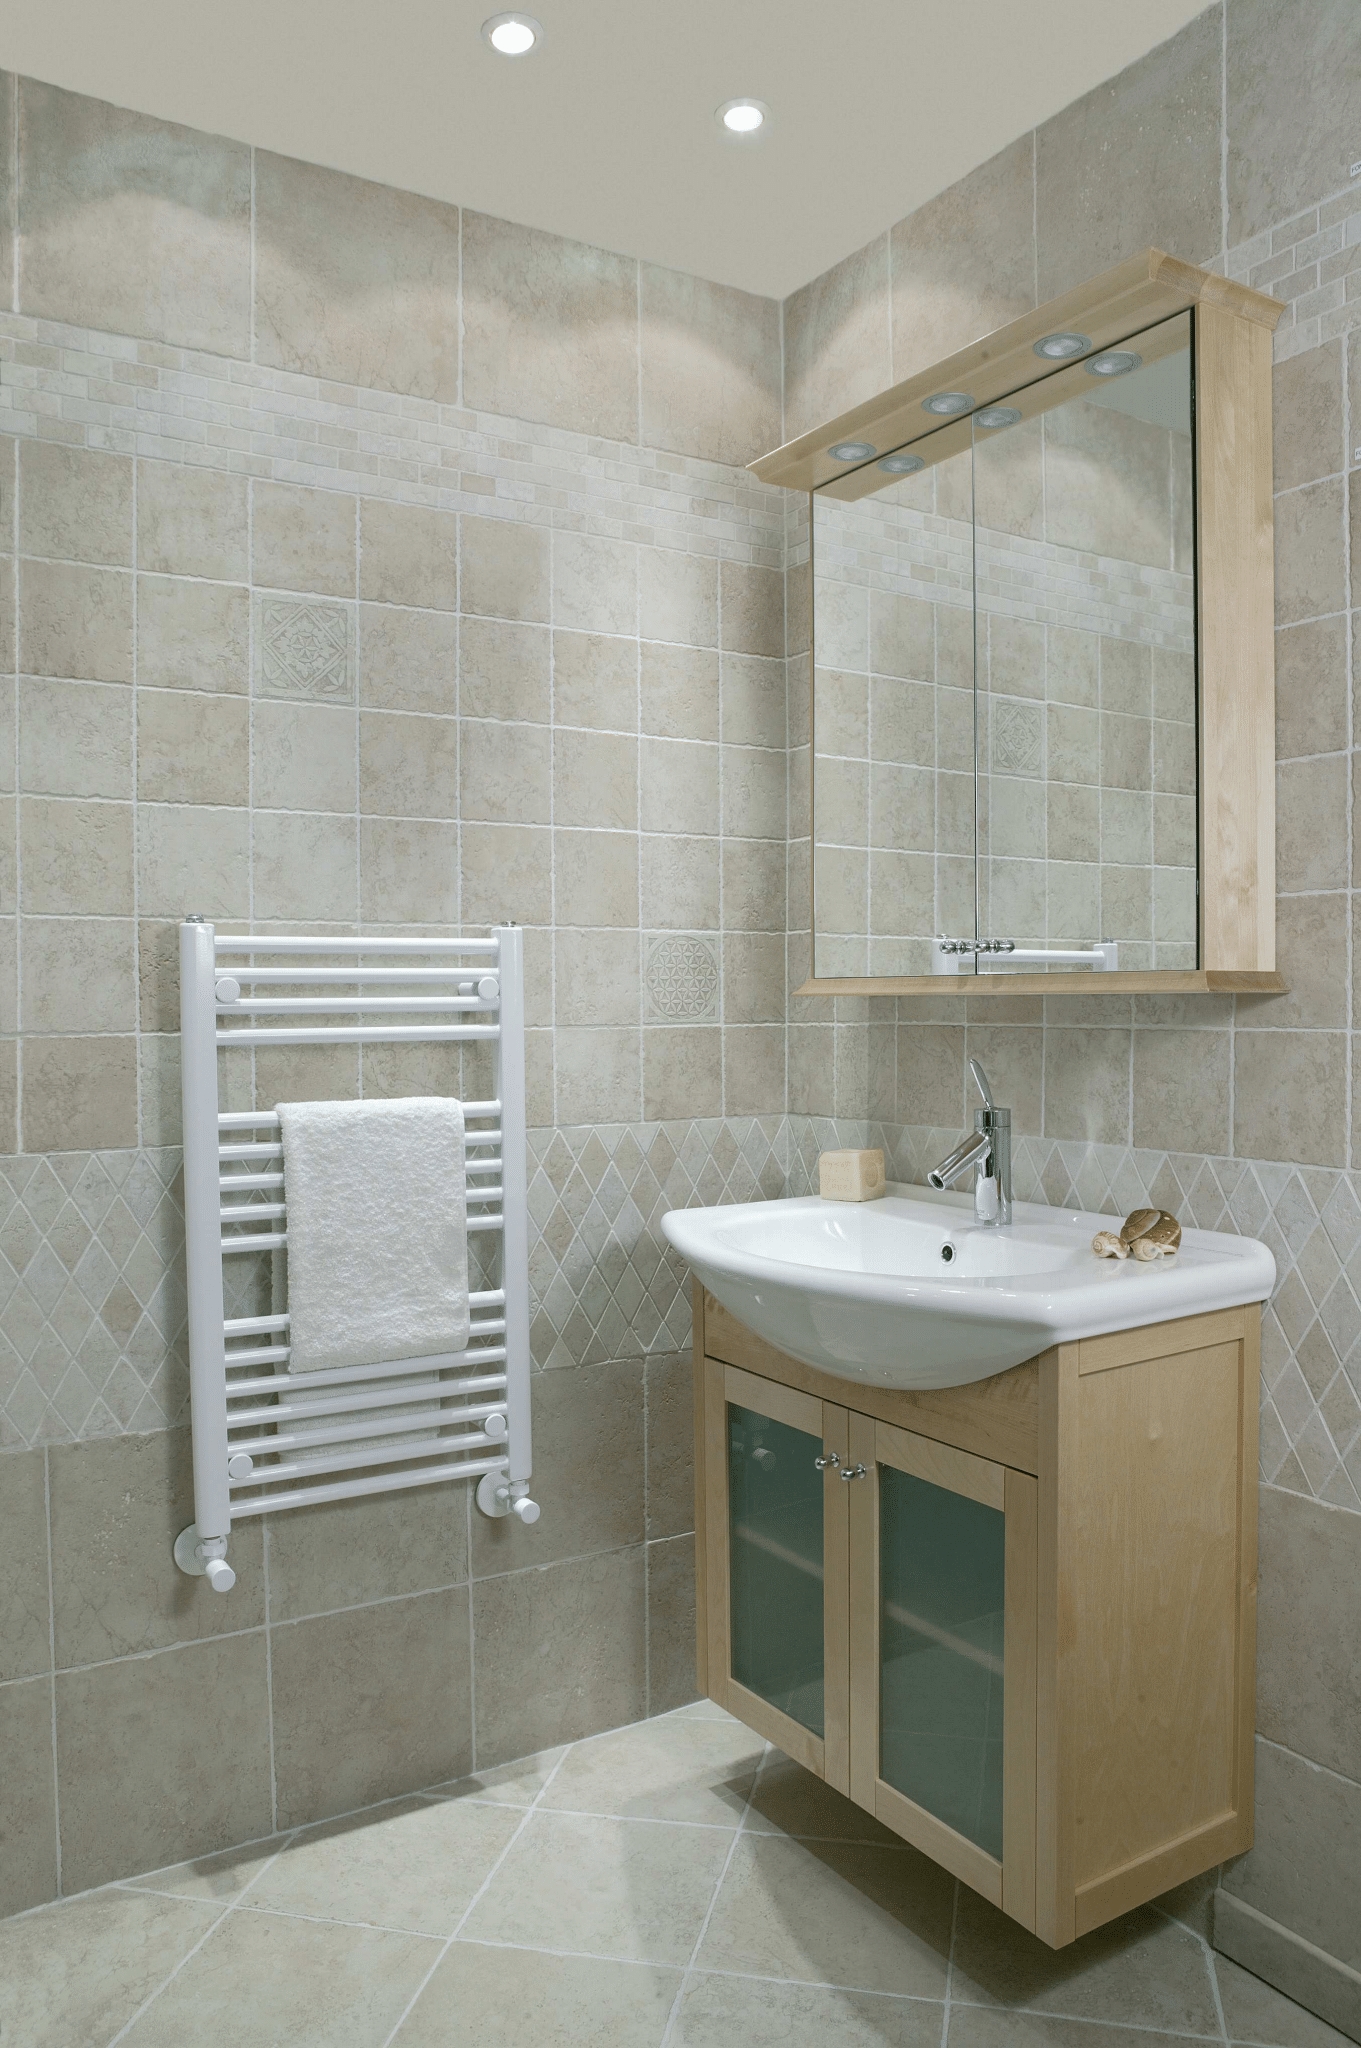 ICO Bath E1051 Tuzio Savoy 23.5"x47.5" Electric Plug-In Towel Warmer - Gloss White - Click Image to Close